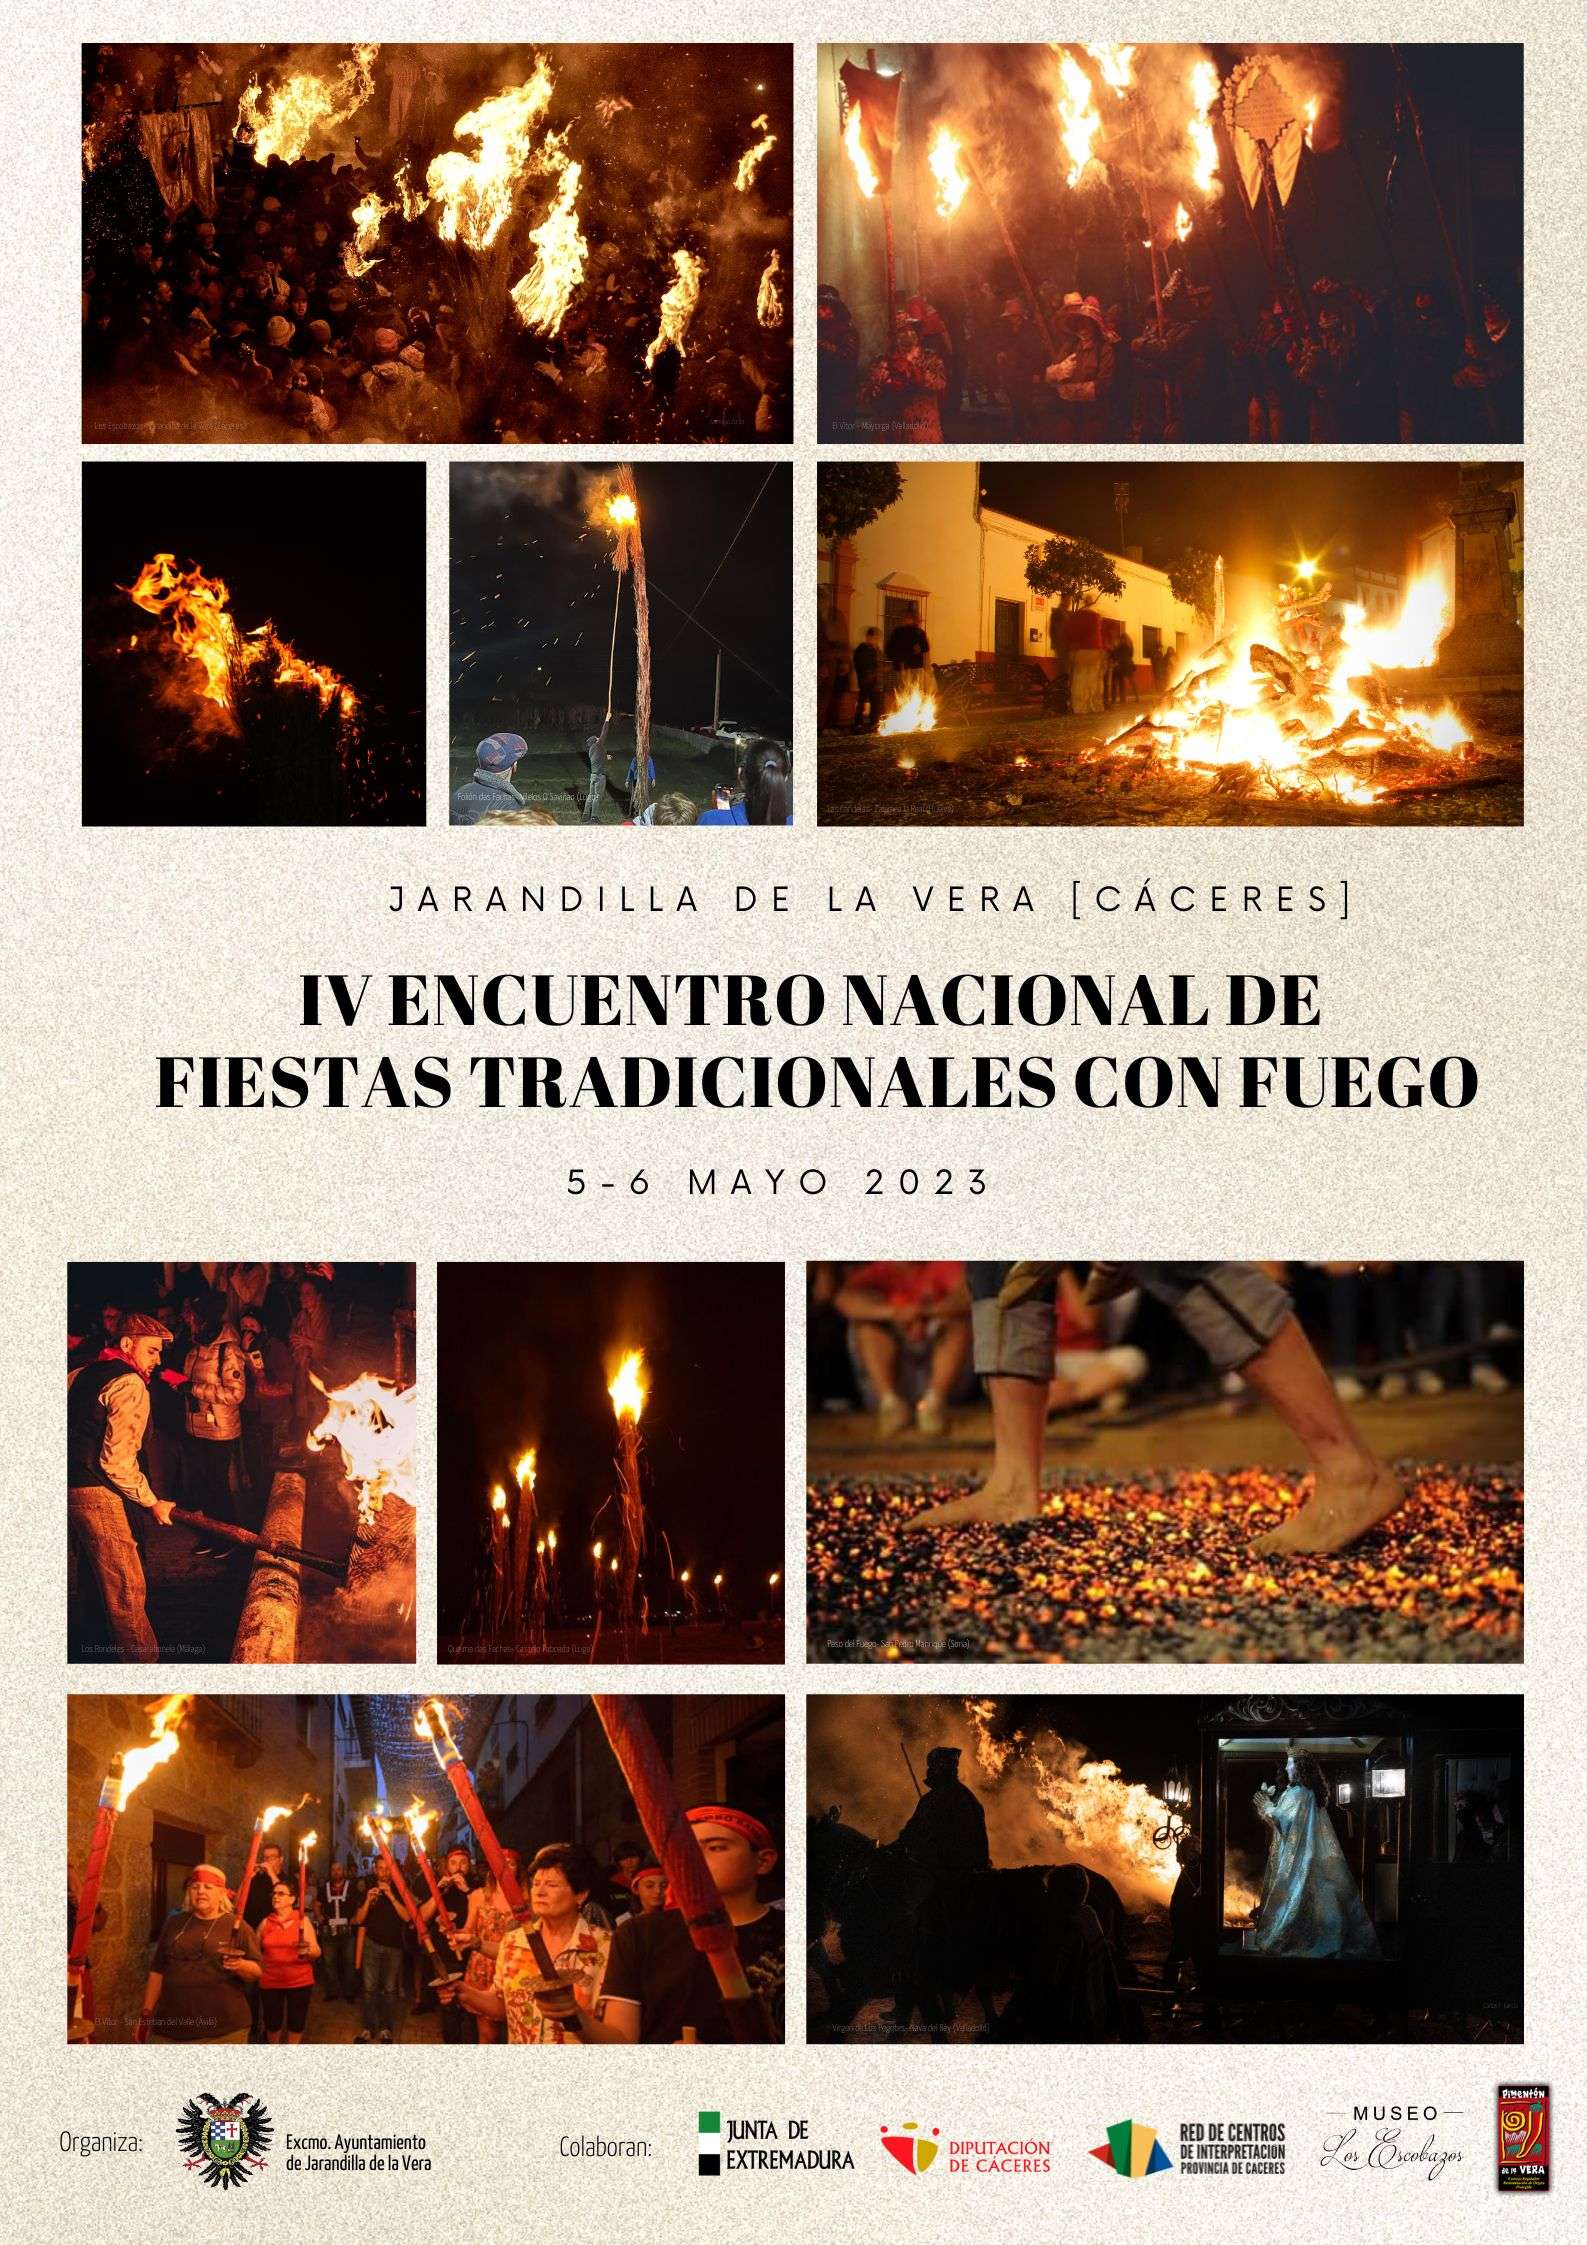 El IV Encuentro nacional de fiestas tradicionales con fuego se celebrará en Jarandilla de la Vera